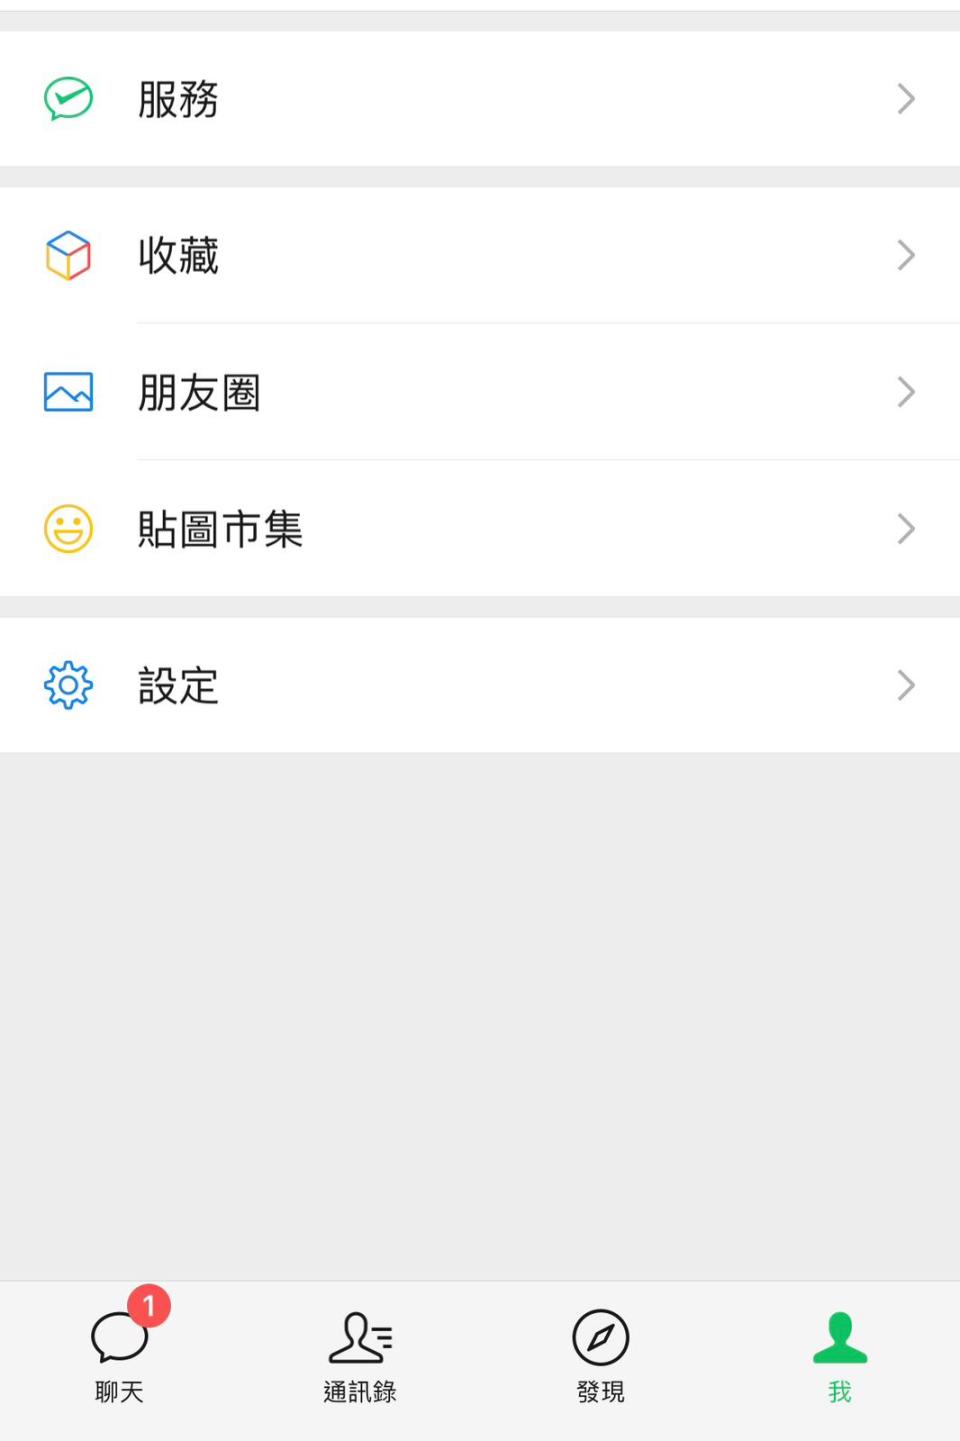 復活節北上深圳優惠｜WeChat Pay HK送50GB上網SIM卡！憑2個條件即可於羅湖口岸換領